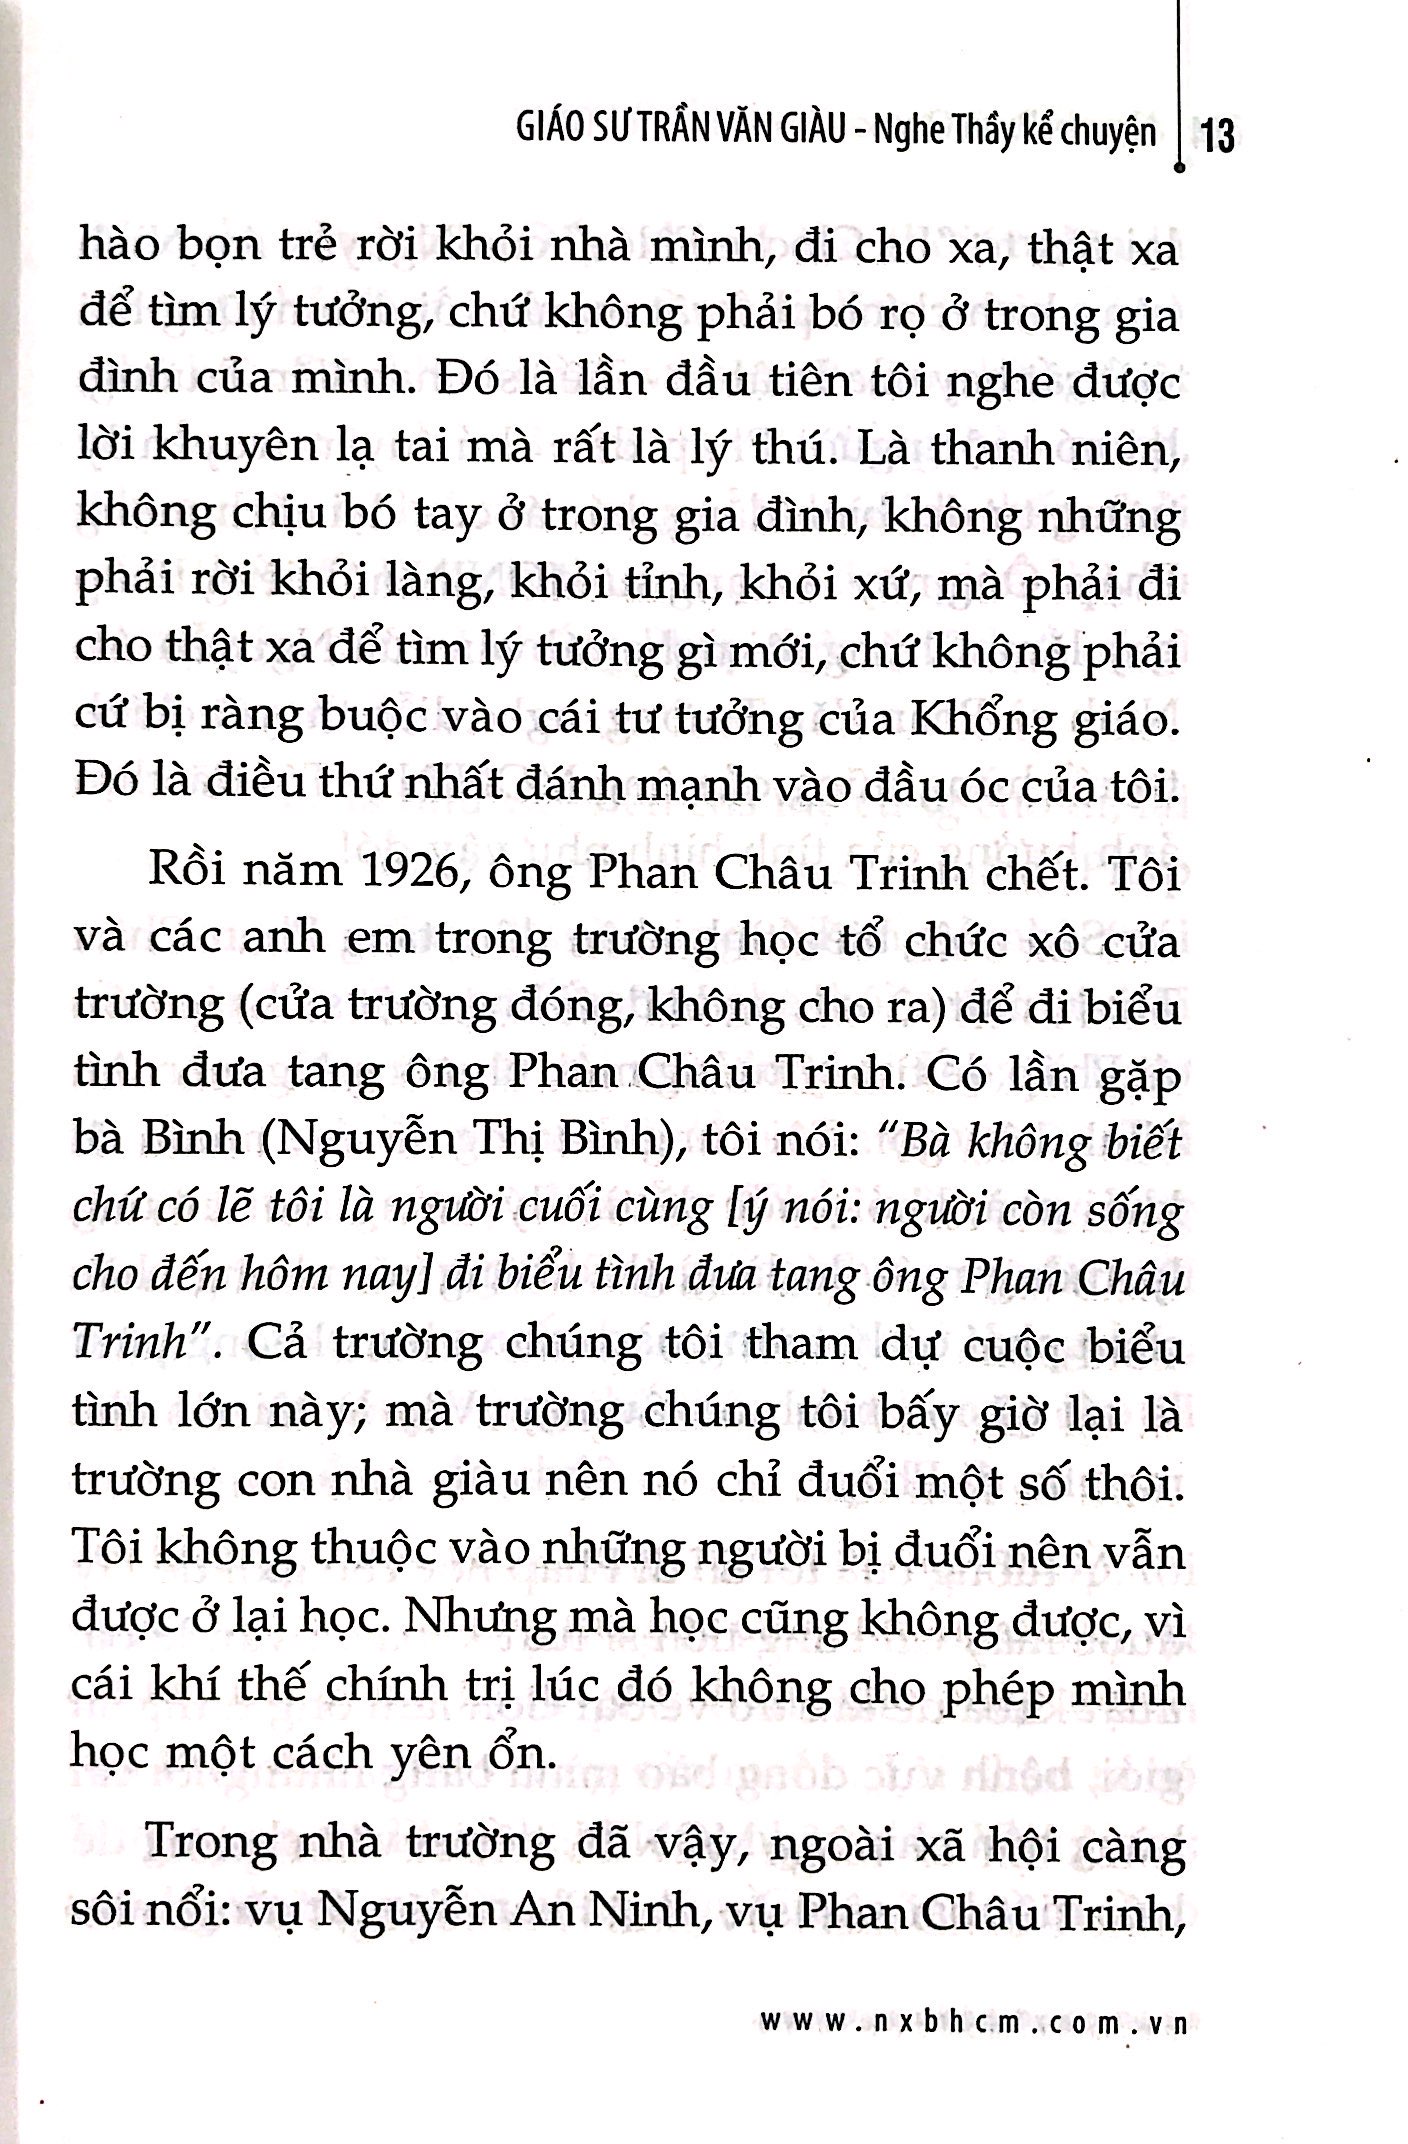 Nghe Thầy Kể Chuyện - Giáo Sư Trần Văn Giàu PDF